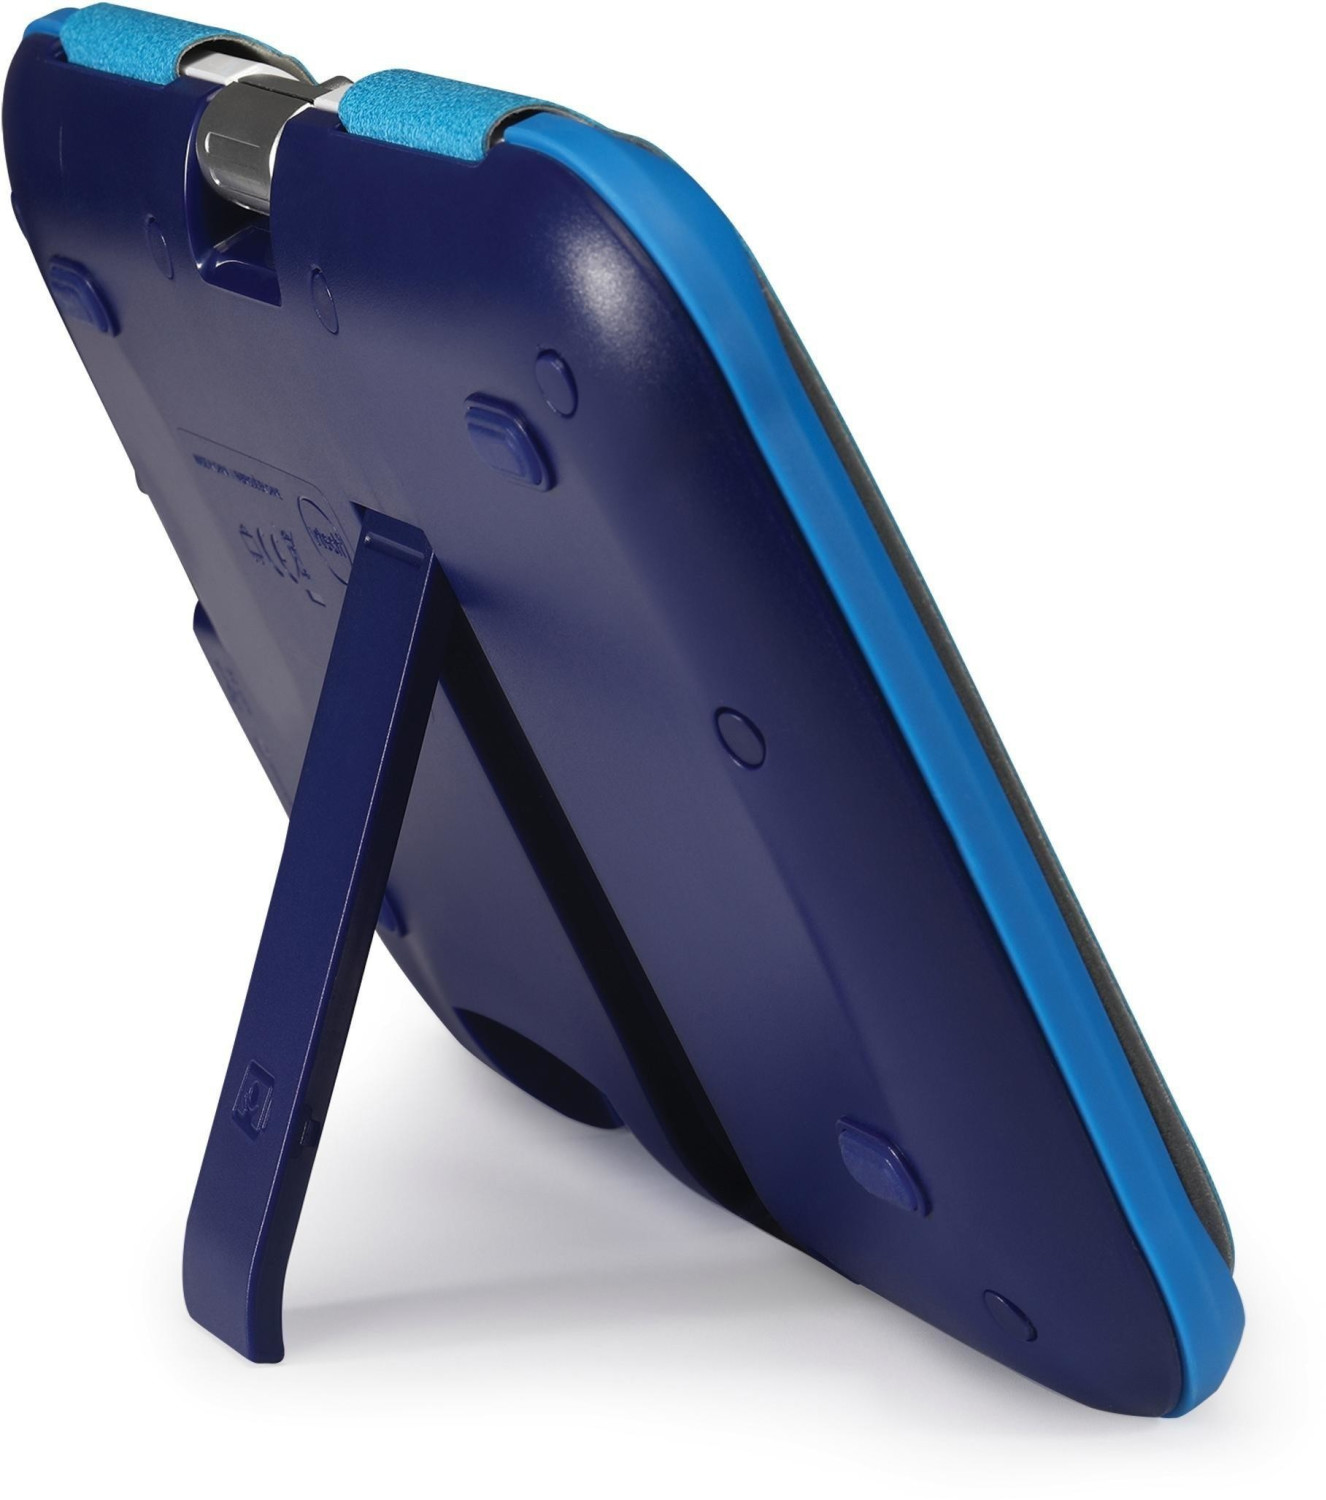 VTech - Storio MAX XL 2.0 Bleue, Tablette Enfants Tactile, Éducative et  Sécurisée avec Écran Couleur 7 Pouces, WiFi, Android, Appareil Photo,  Cadeau Enfant de 3 Ans à 11 Ans - Contenu